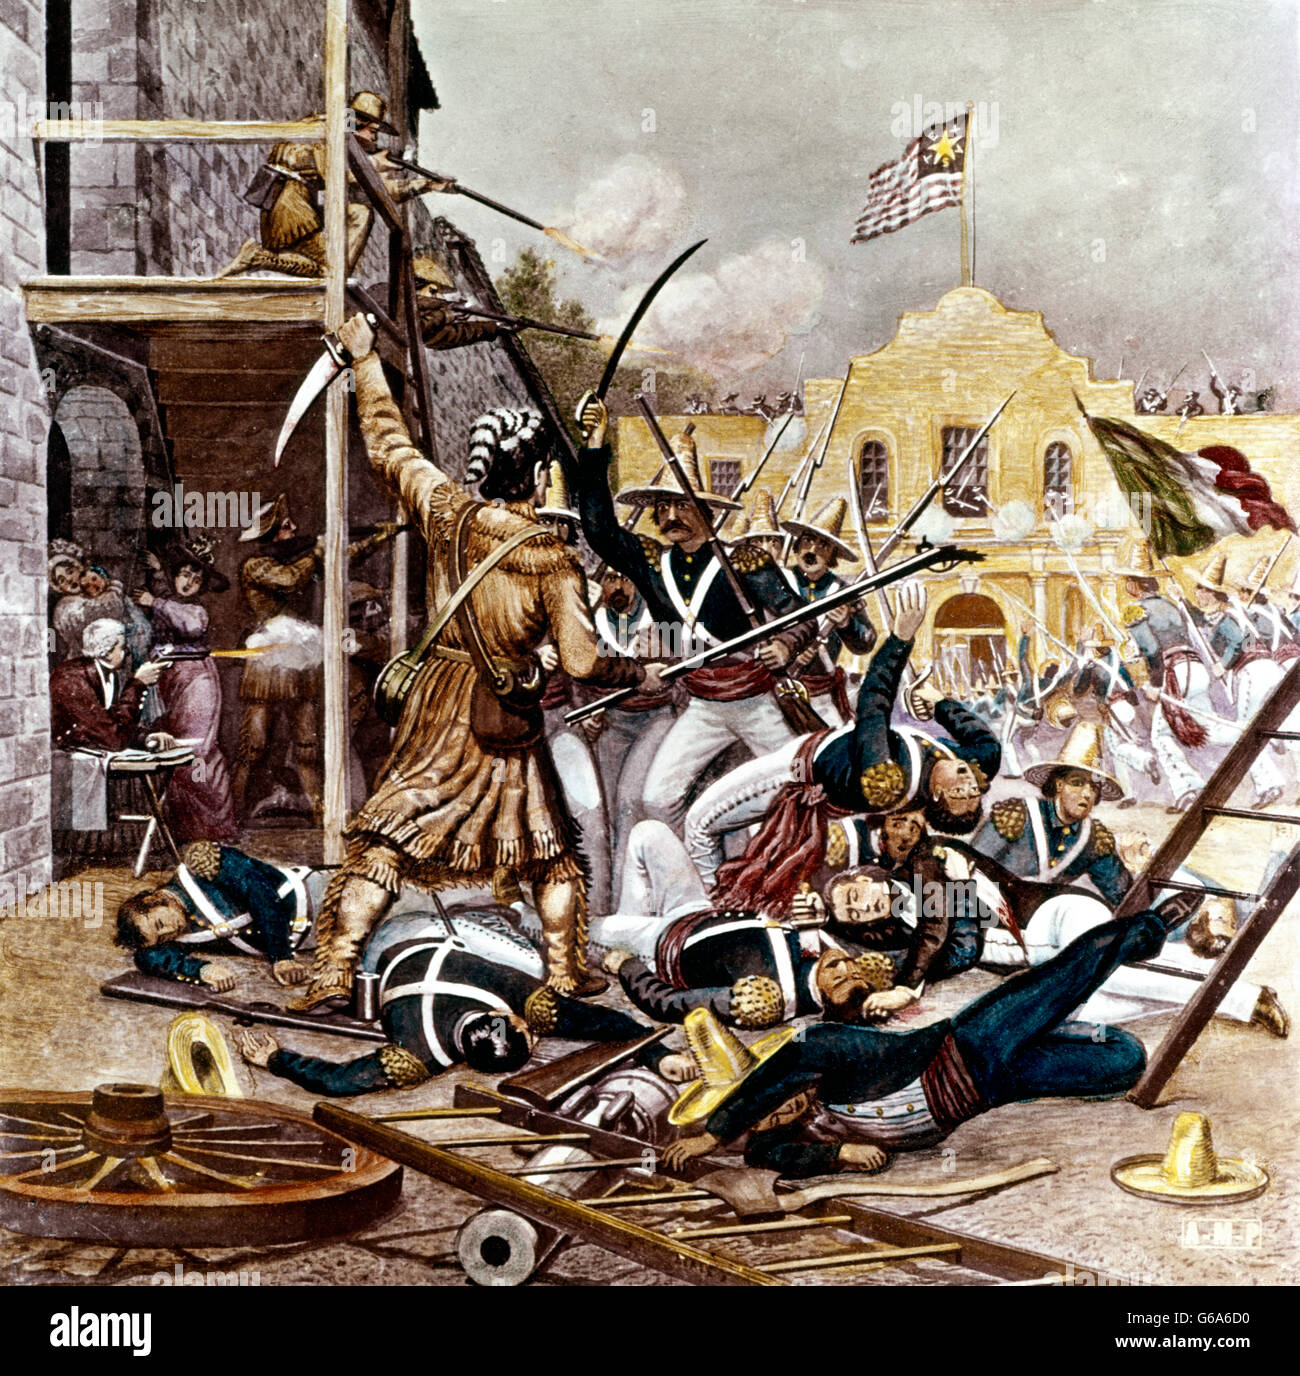 6 marzo 1836 Davy Crockett combattimenti alla Alamo guerra per l'indipendenza del Texas dal Messico illustrazione vetro antico lantern slide Foto Stock